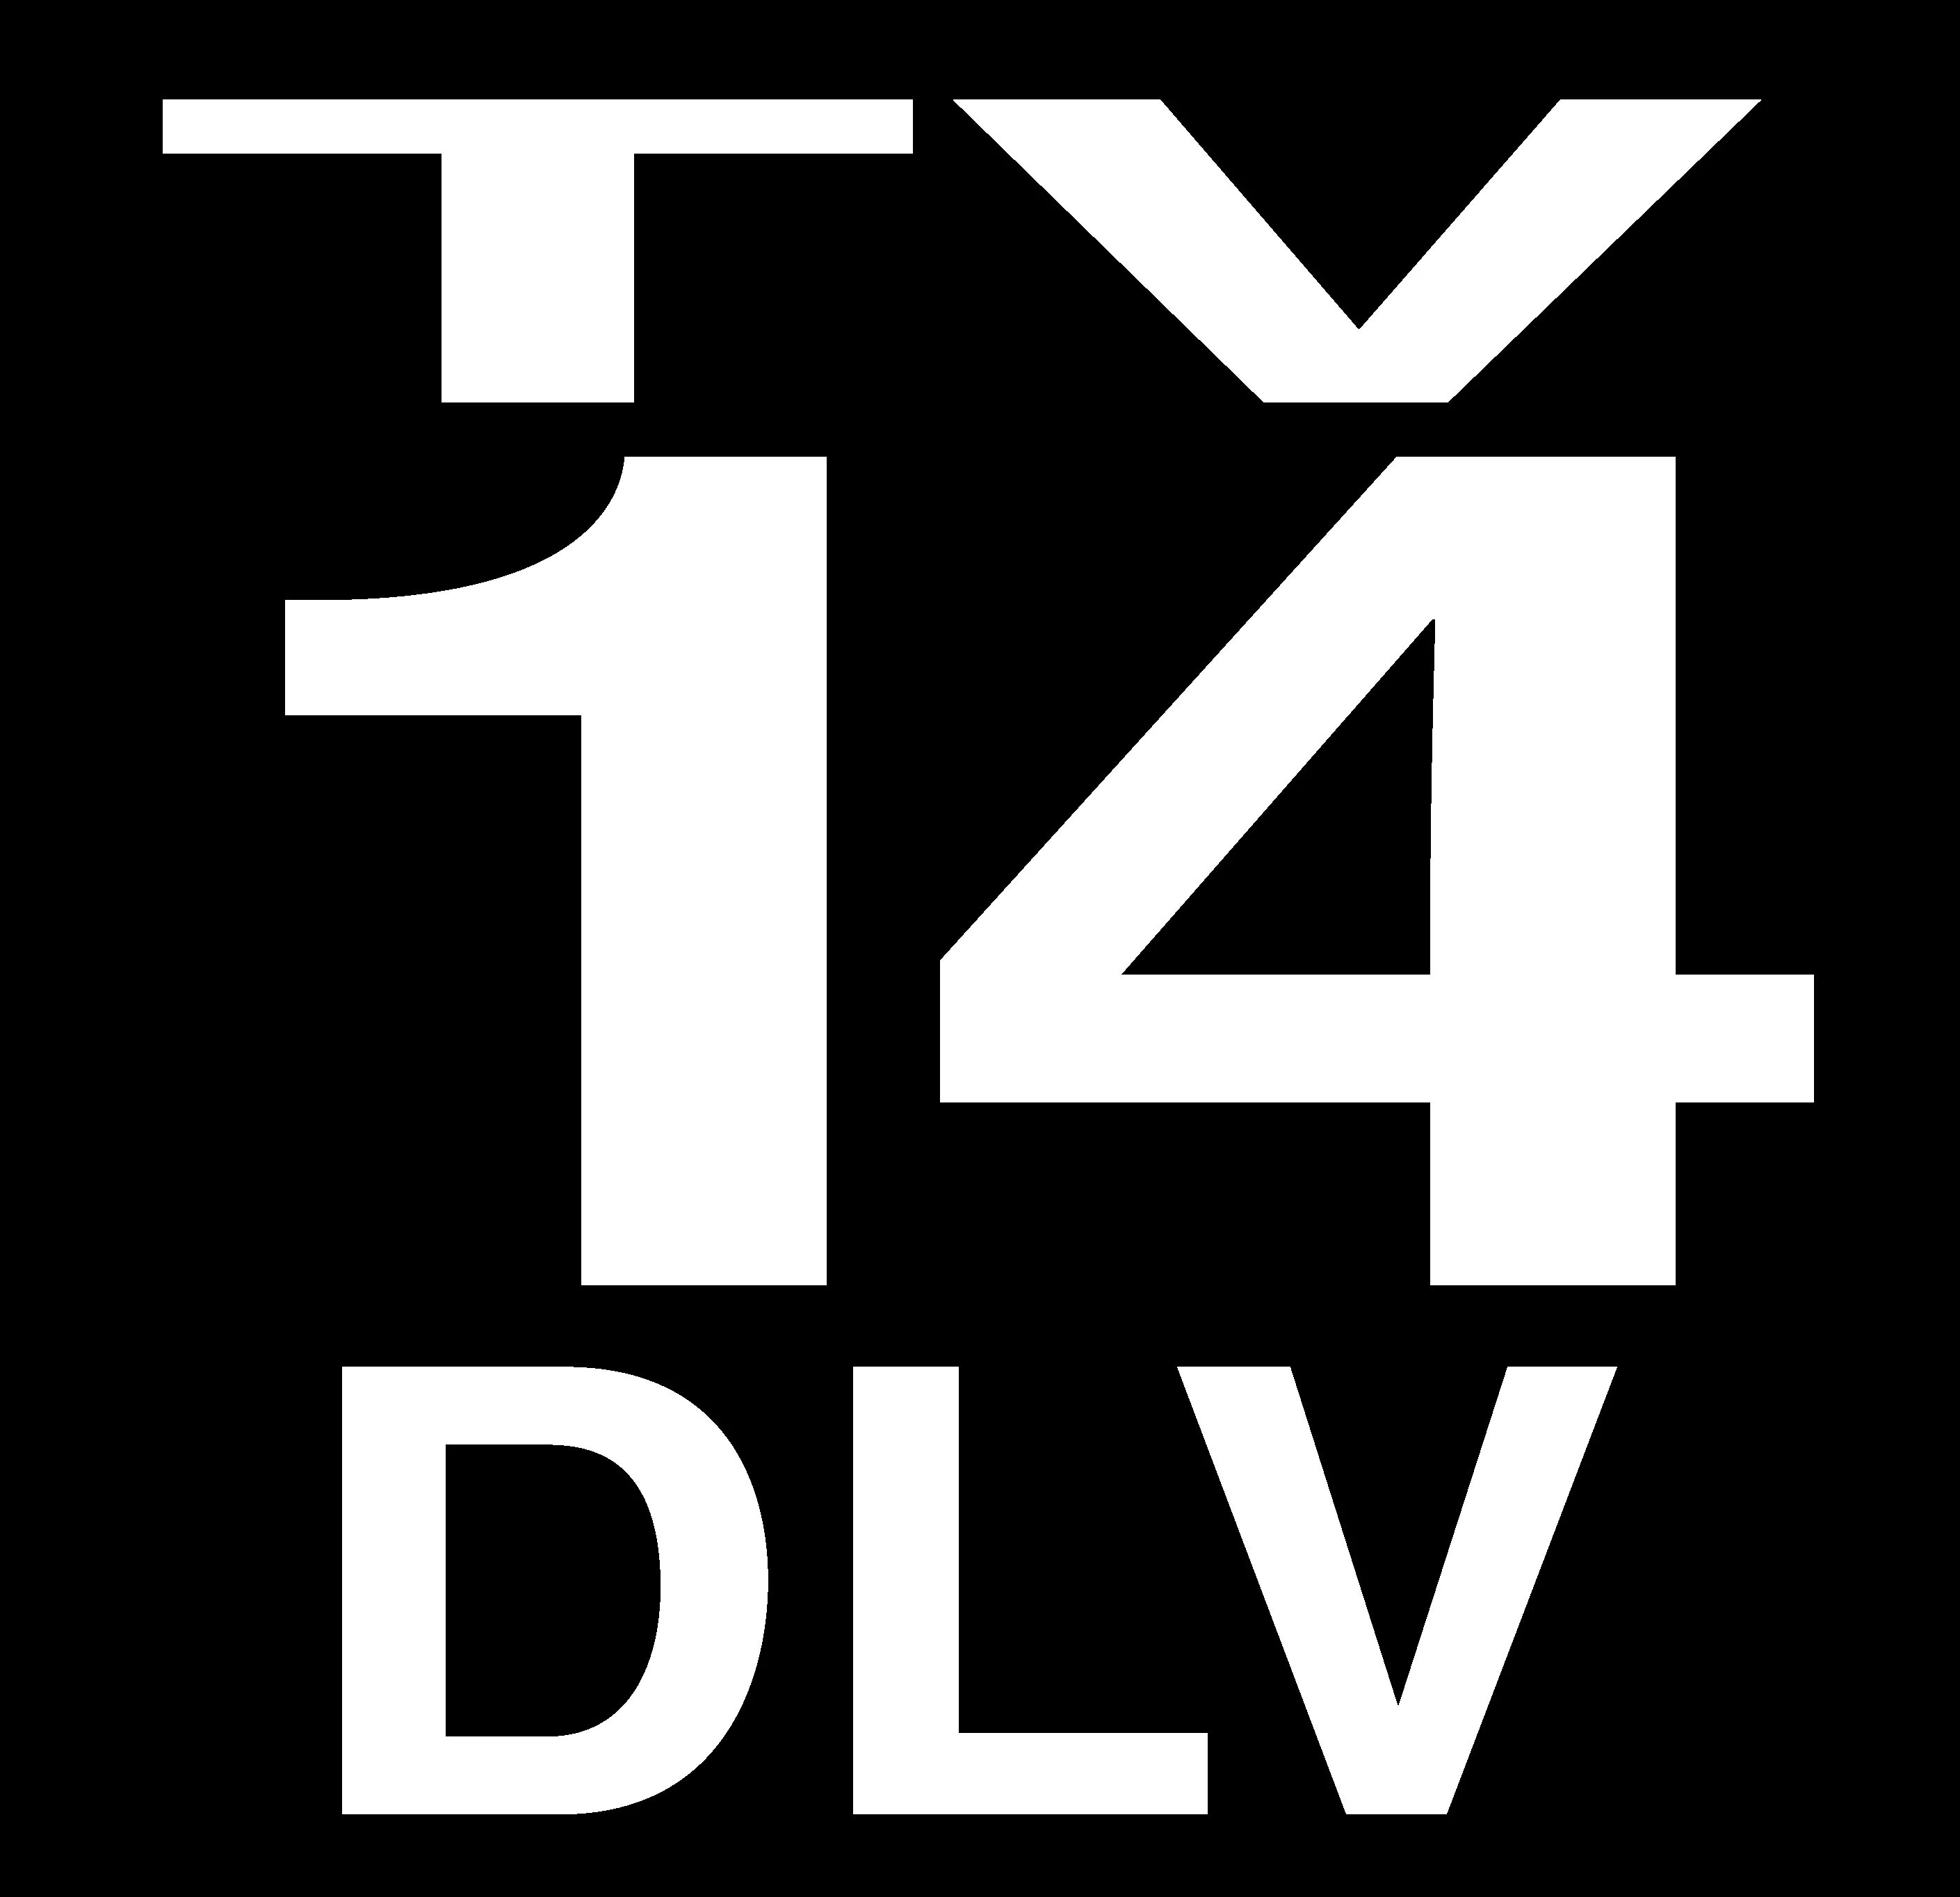 TV 14. DLV логотип. TV 14 L. TV PG logo.